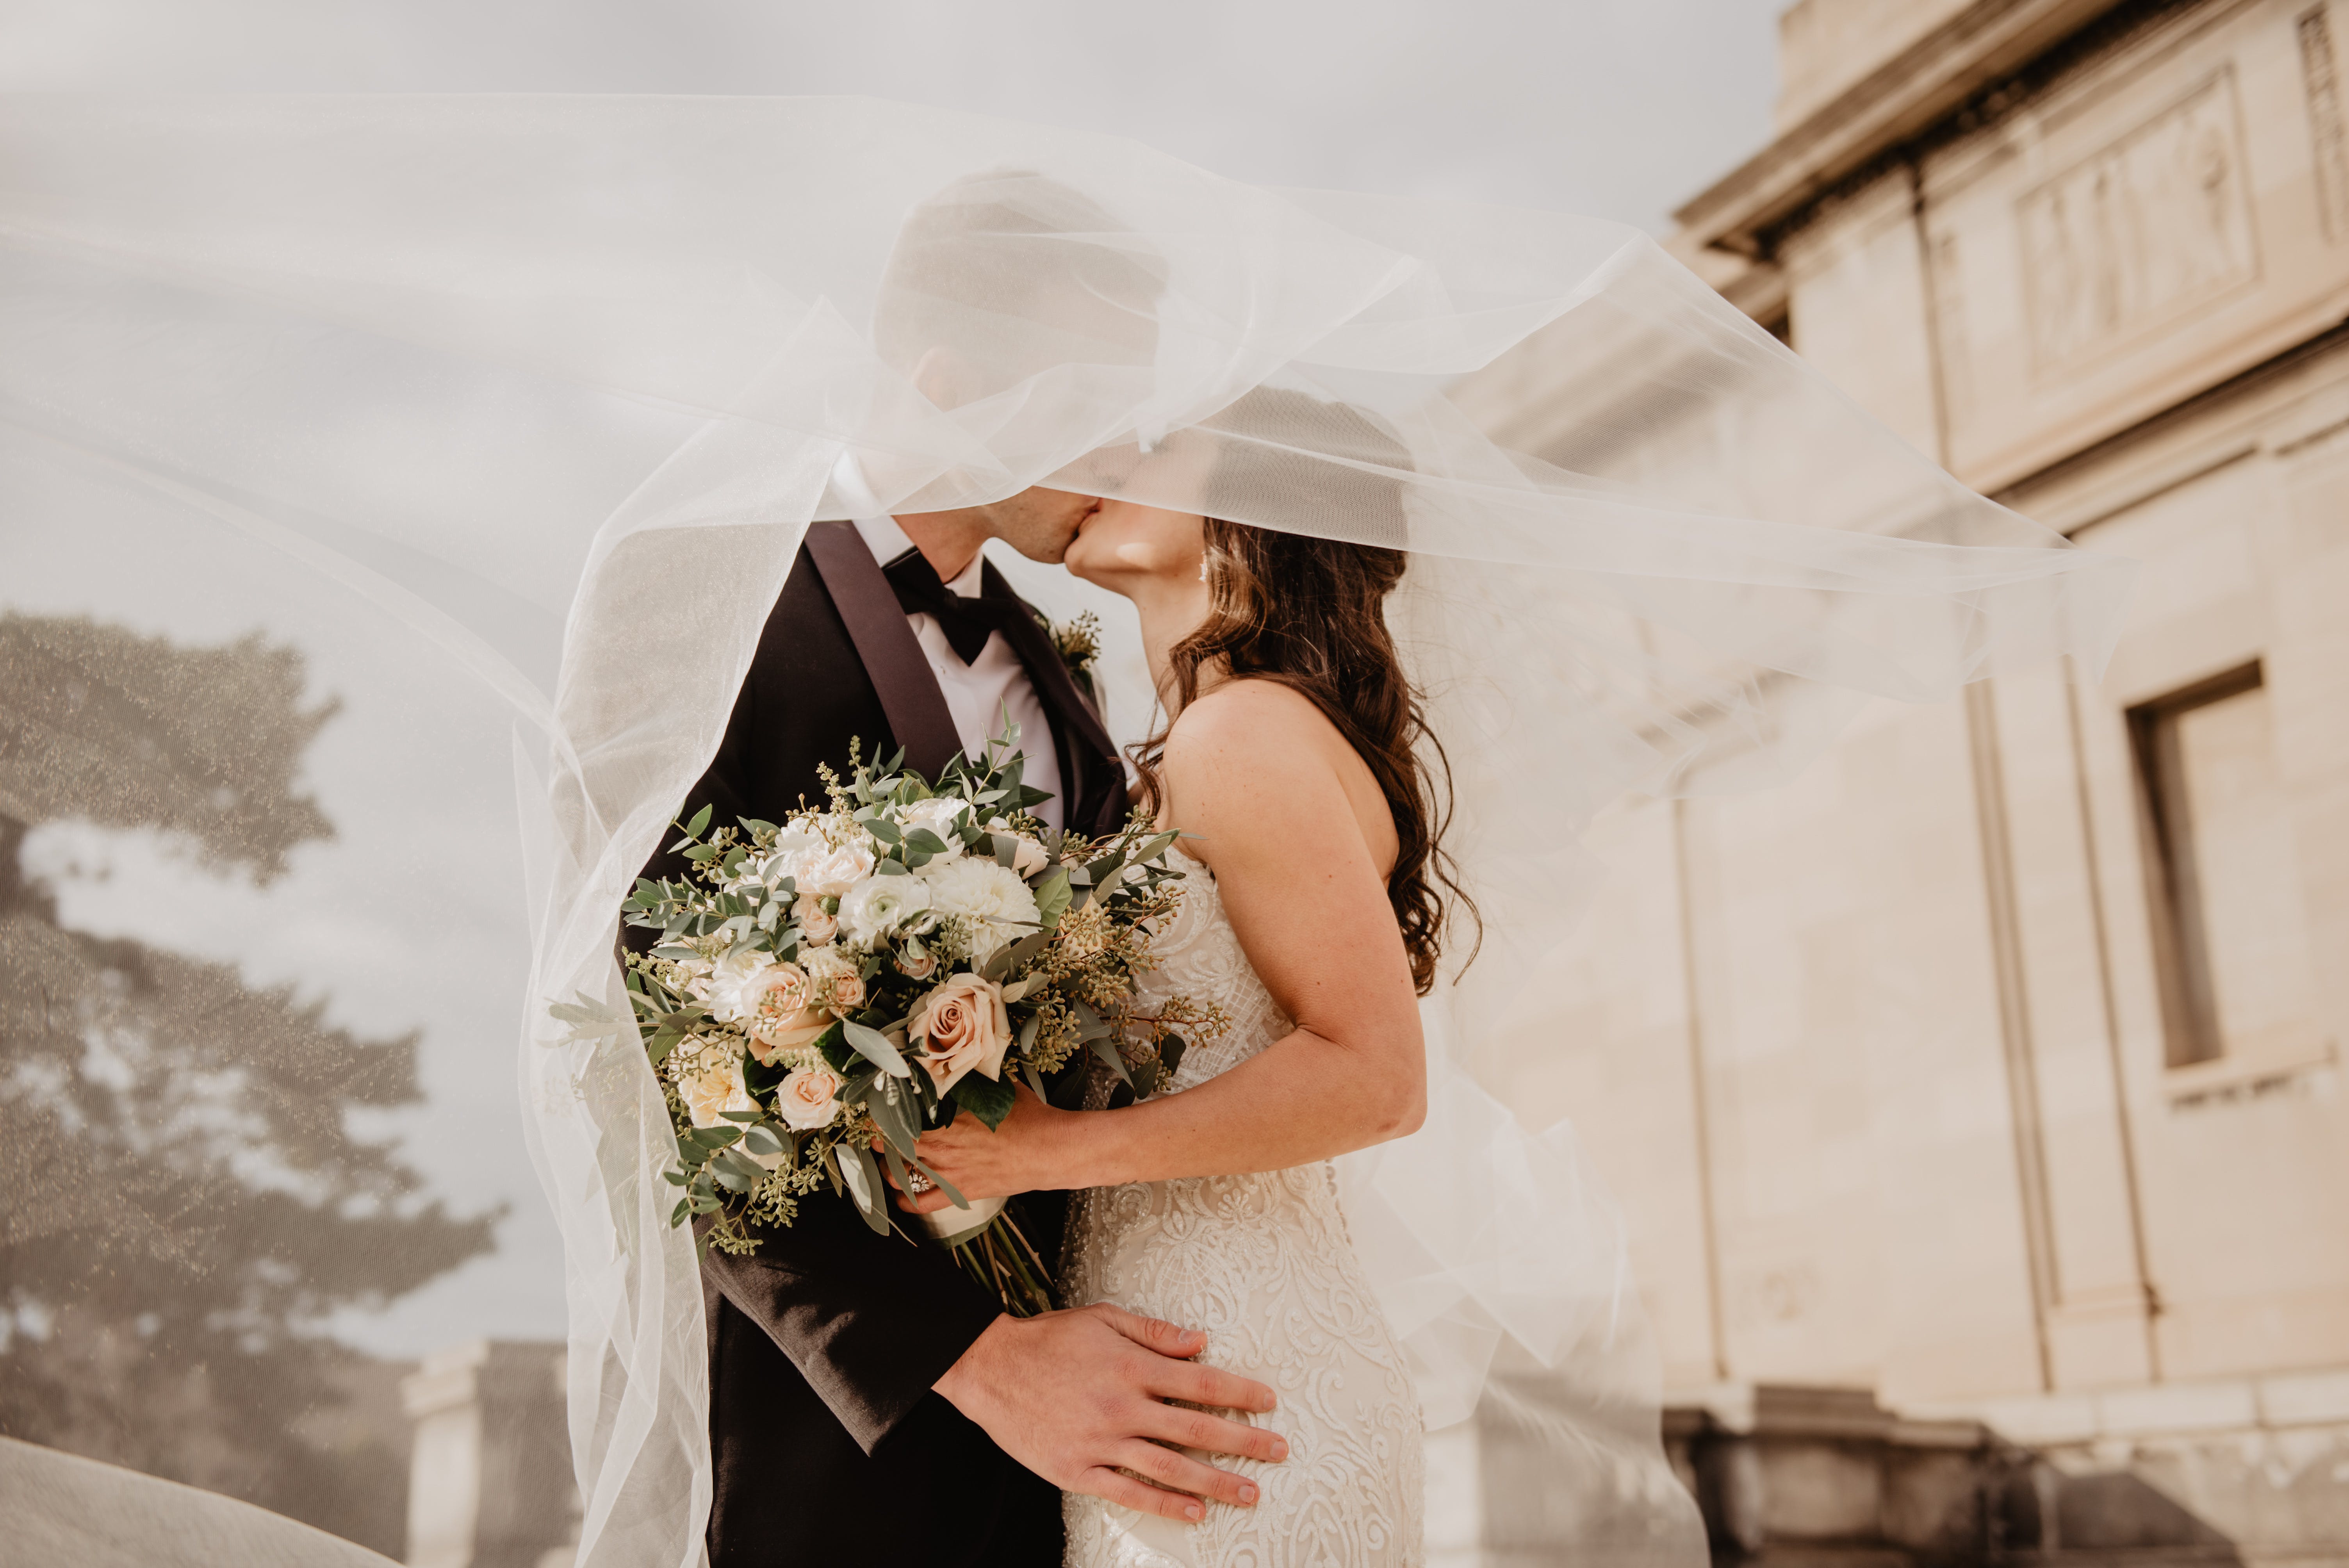 Un couple récemment marié s'embrassant sous le voile de la robe de mariée de la mariée | Source : Pexels